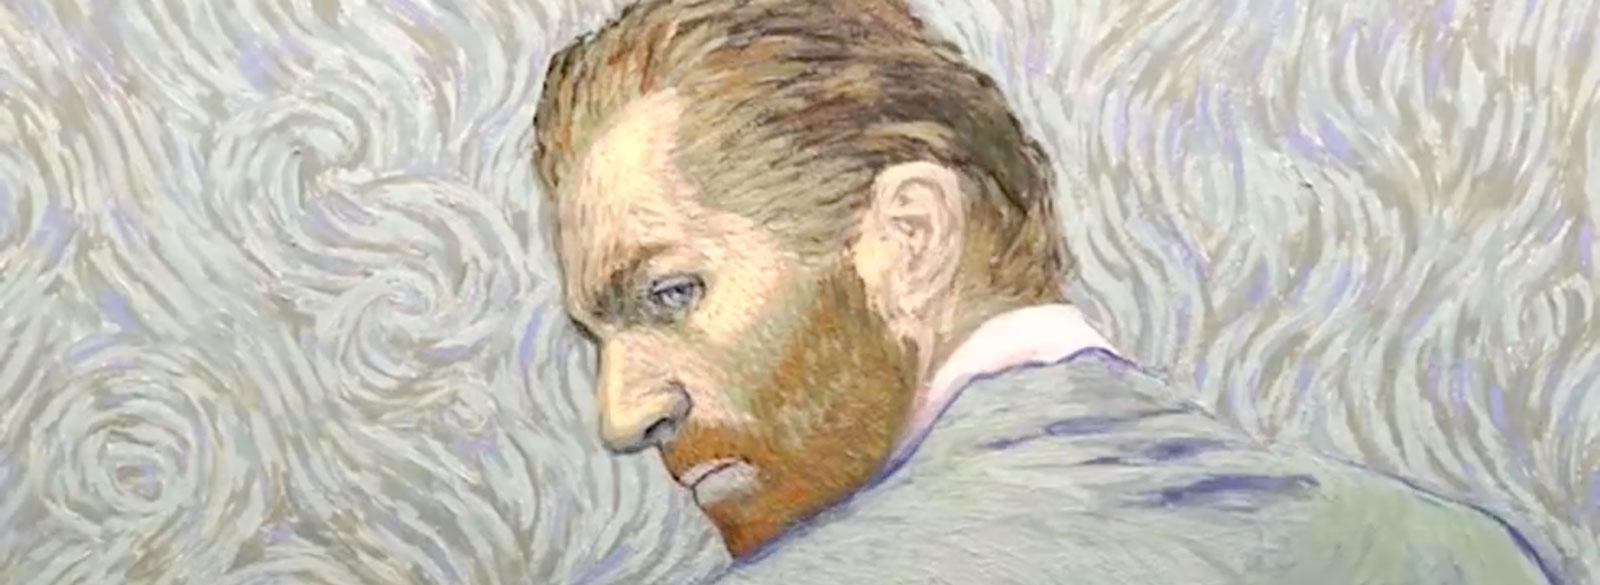 Van Gogh Painted in His Own Movie